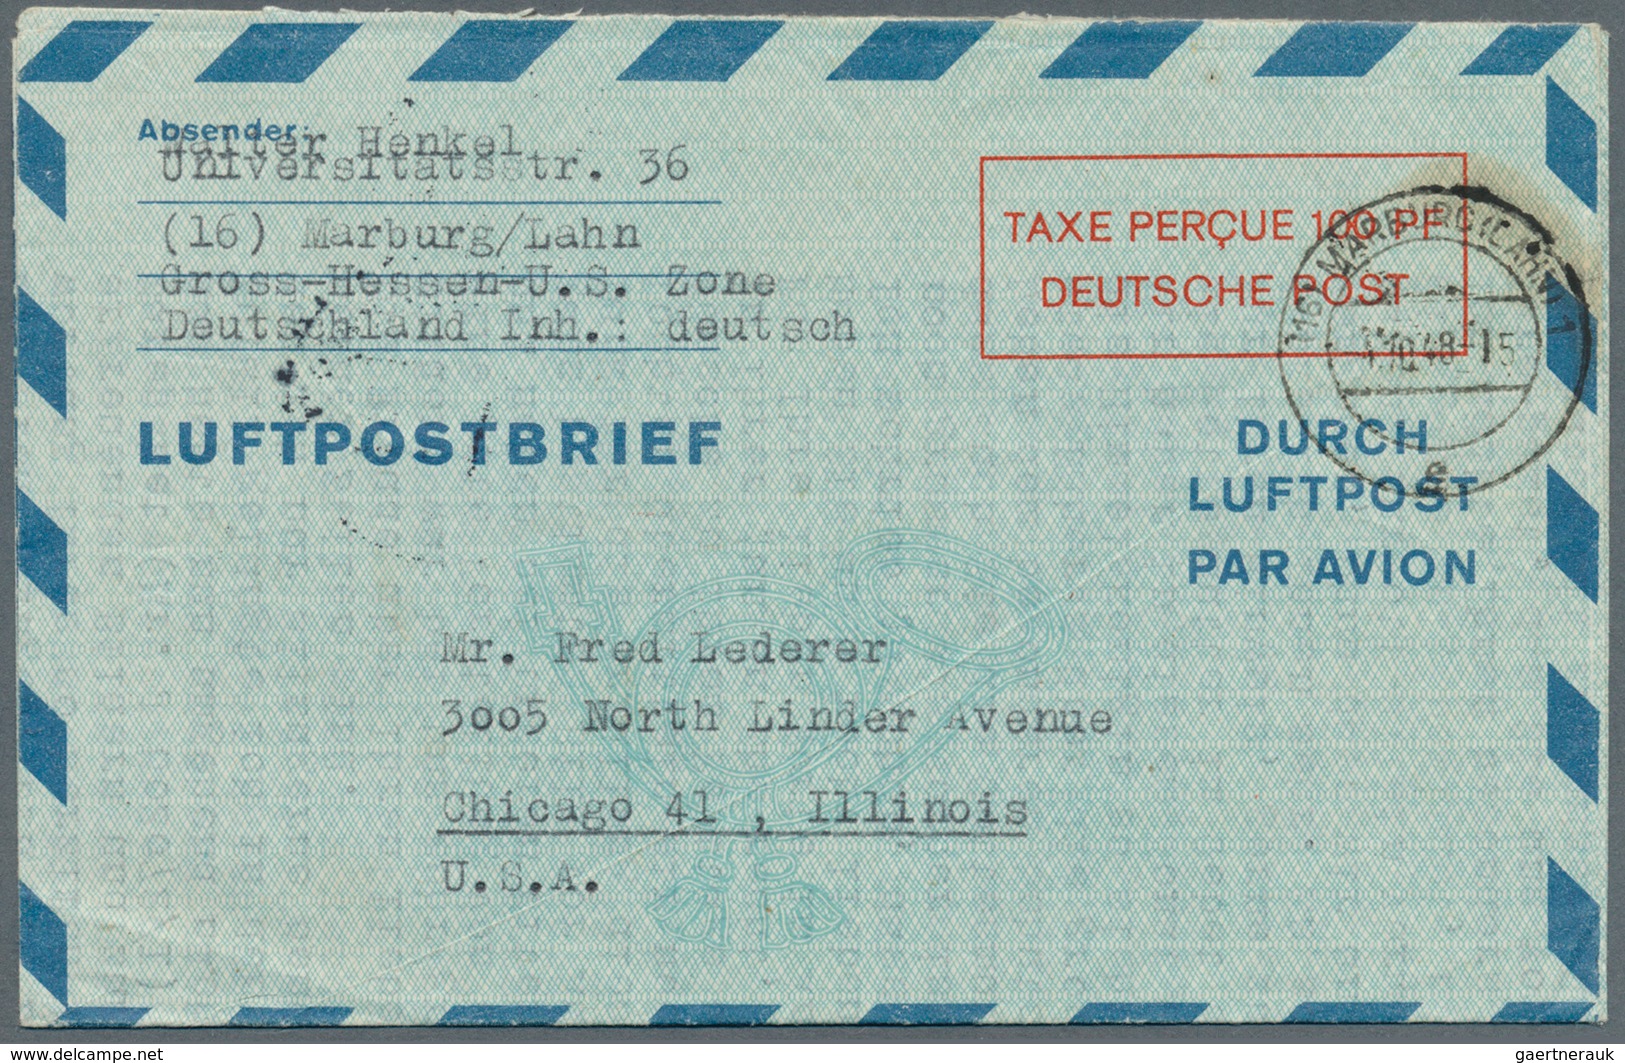 32844 Bundesrepublik - Ganzsachen: 1948/1953 (ca.), mit Bizone. Posten von insgesamt 272 LUFTPOSTFALTBRIEF